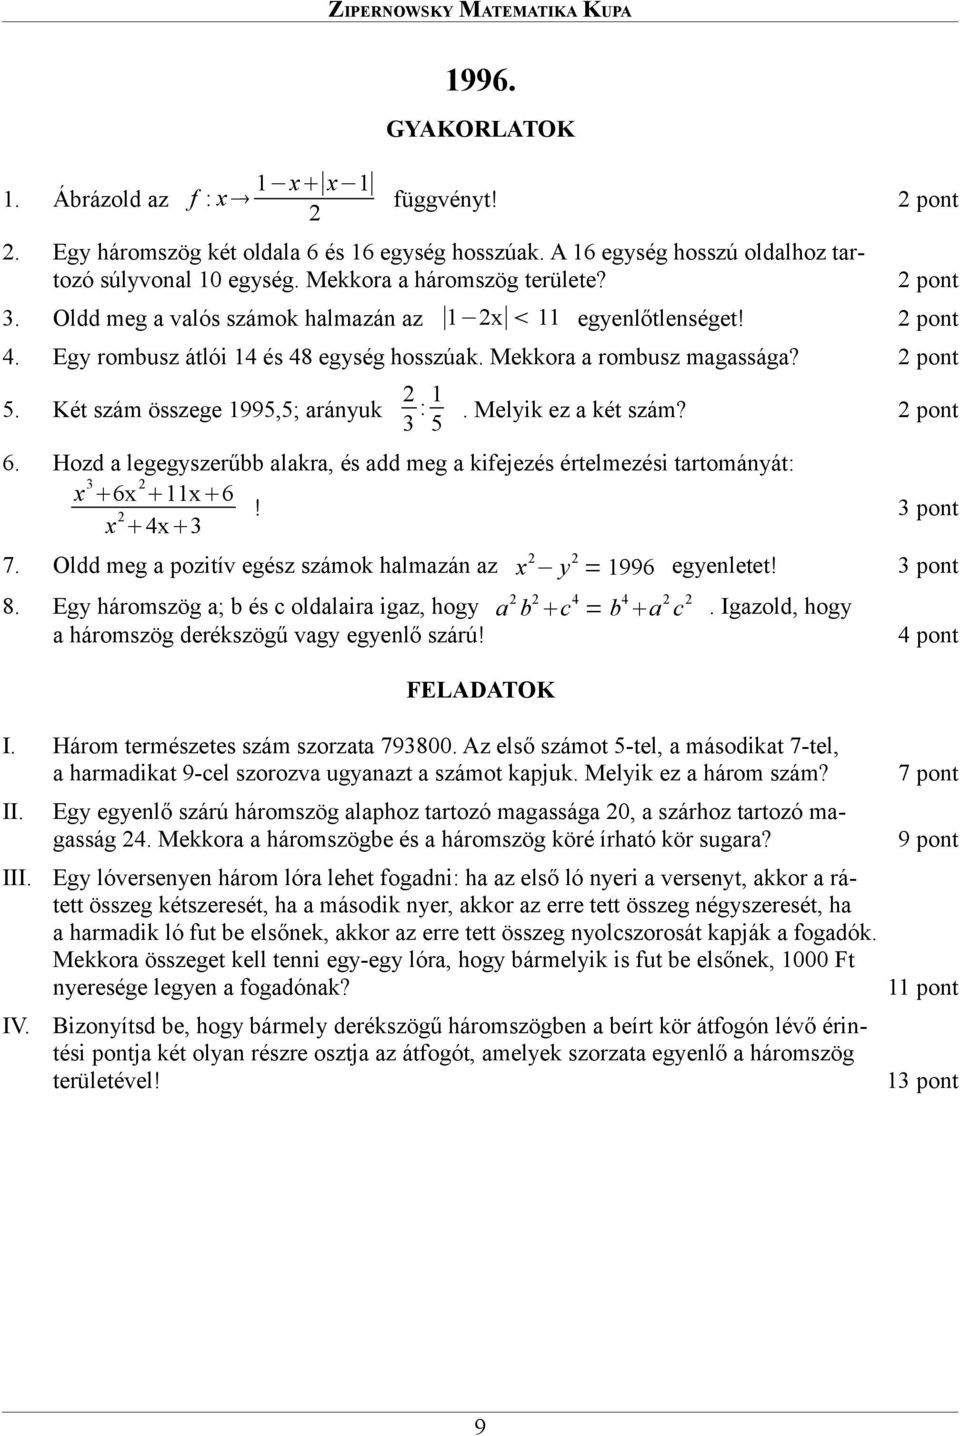 ZIPERNOWSKY MATEMATIKA KUPA - PDF Ingyenes letöltés